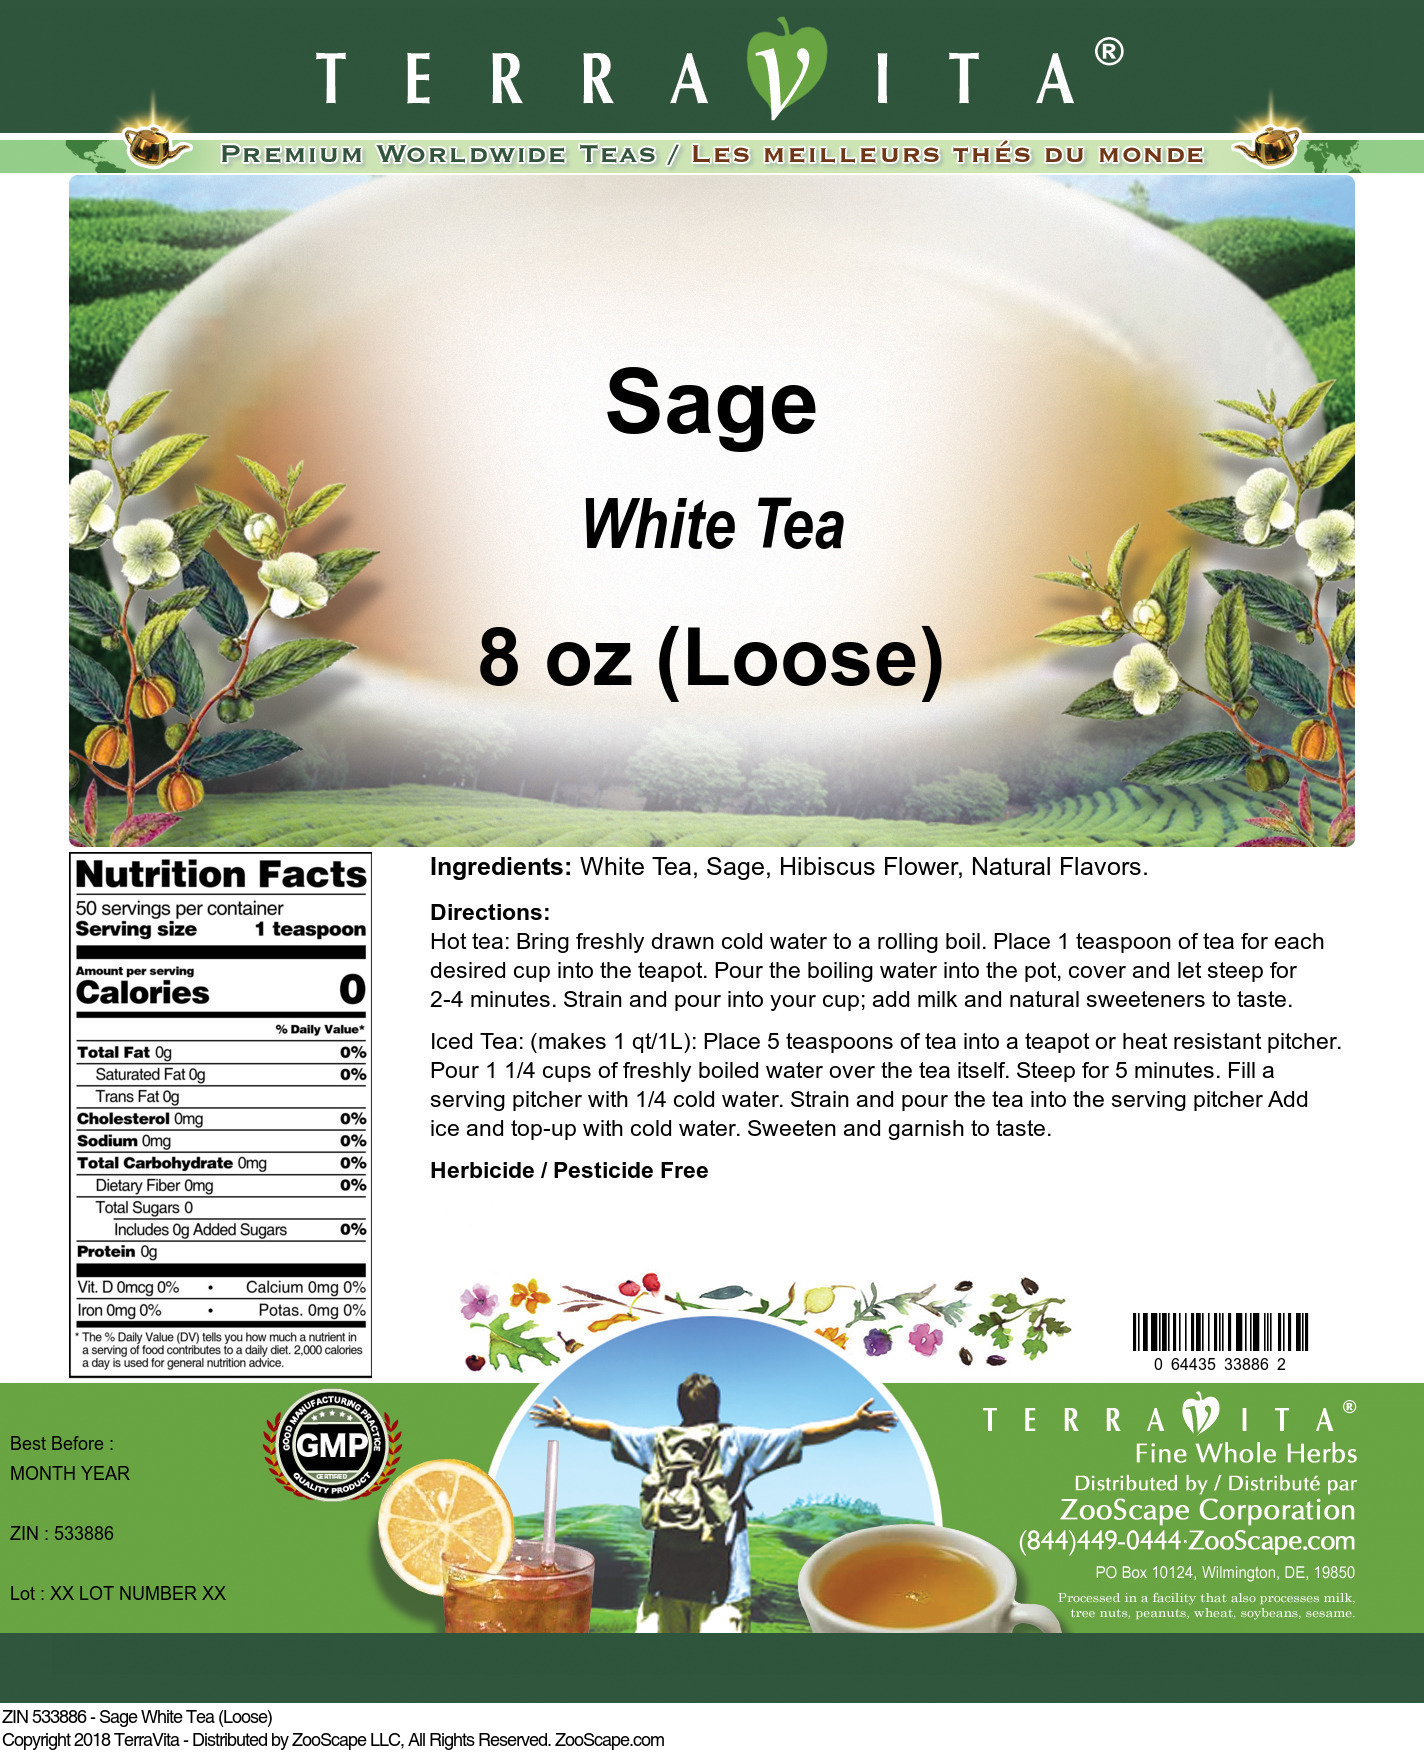 Sage White Tea (Loose) - Label